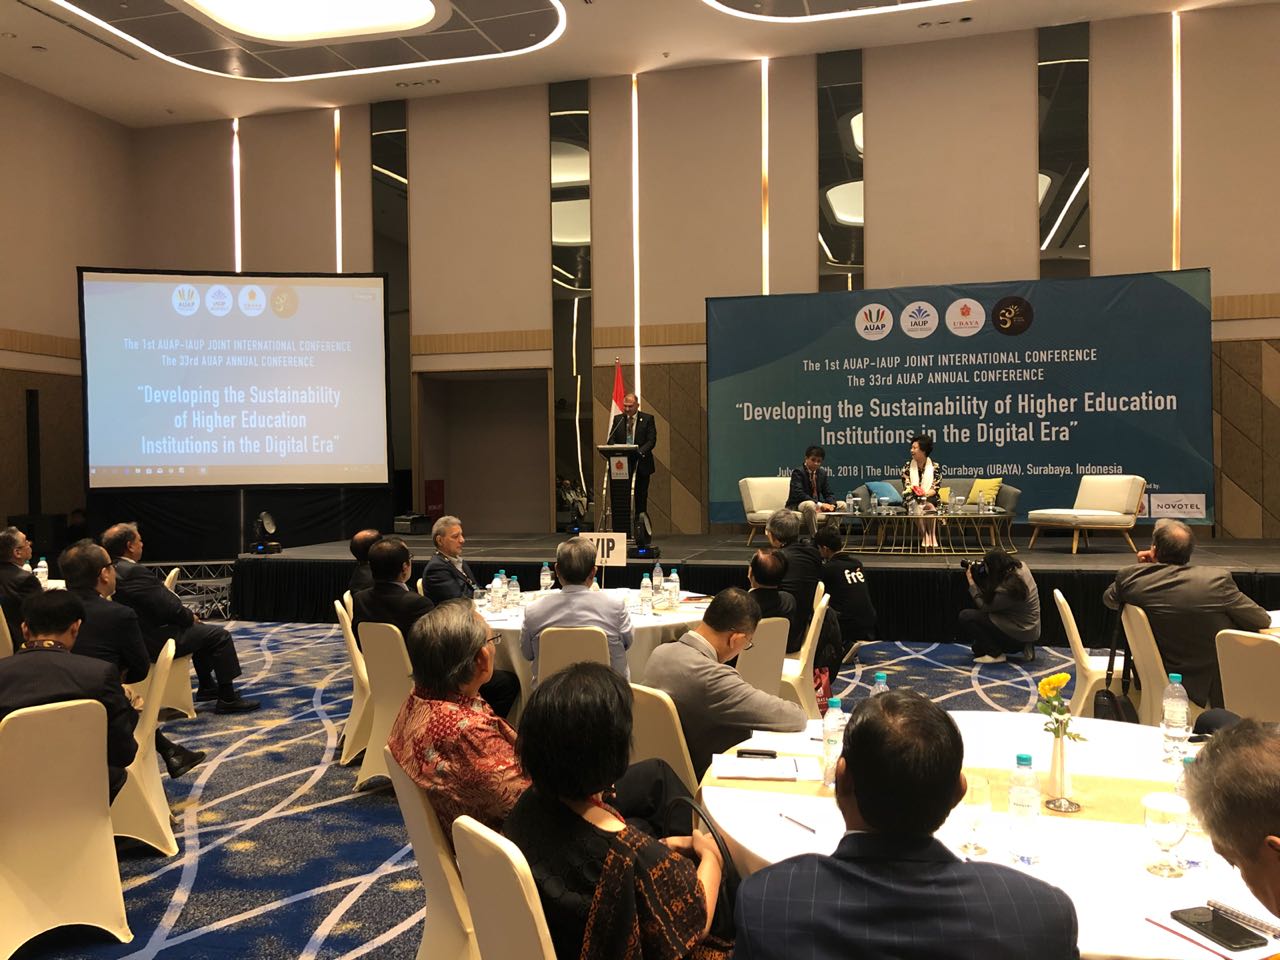 AUAP-ისა და IAUP-ის პირველი საერთაშორისო კონფერენცია ინდონეზიაში